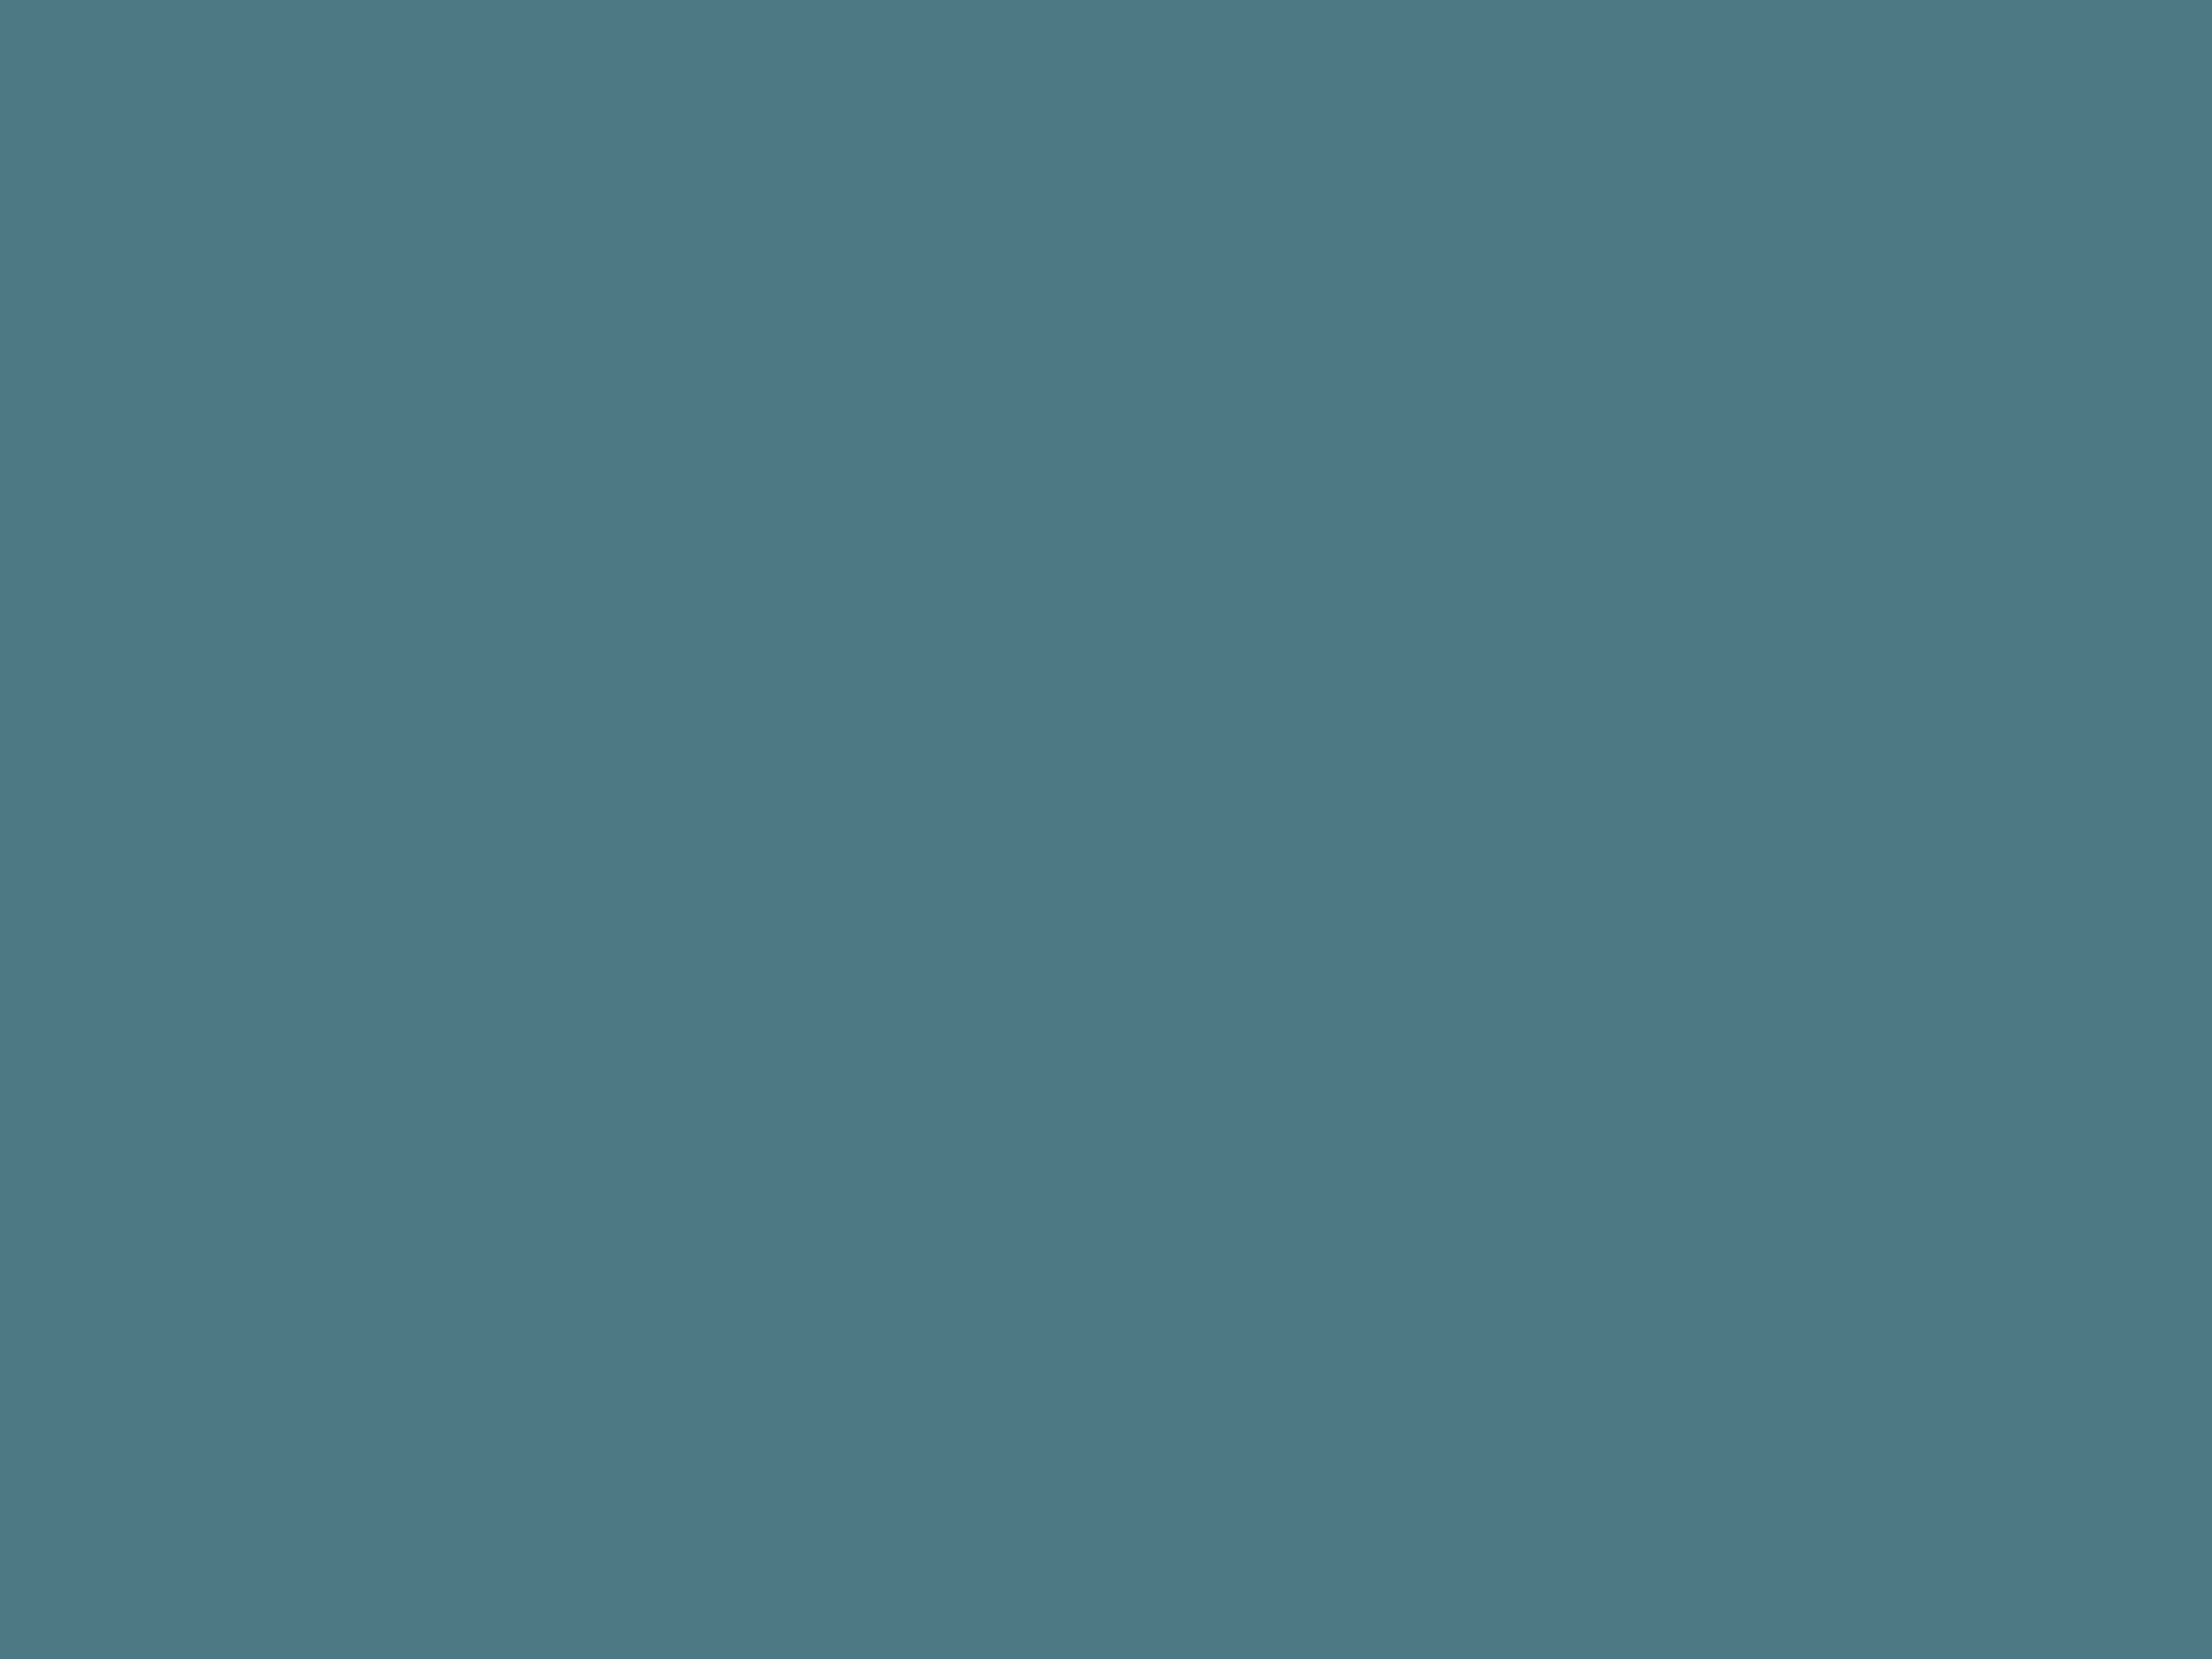 Марк Шагал. Интерьер с цветами. 1917. Музей-квартира И.И. Бродского, Санкт-Петербург